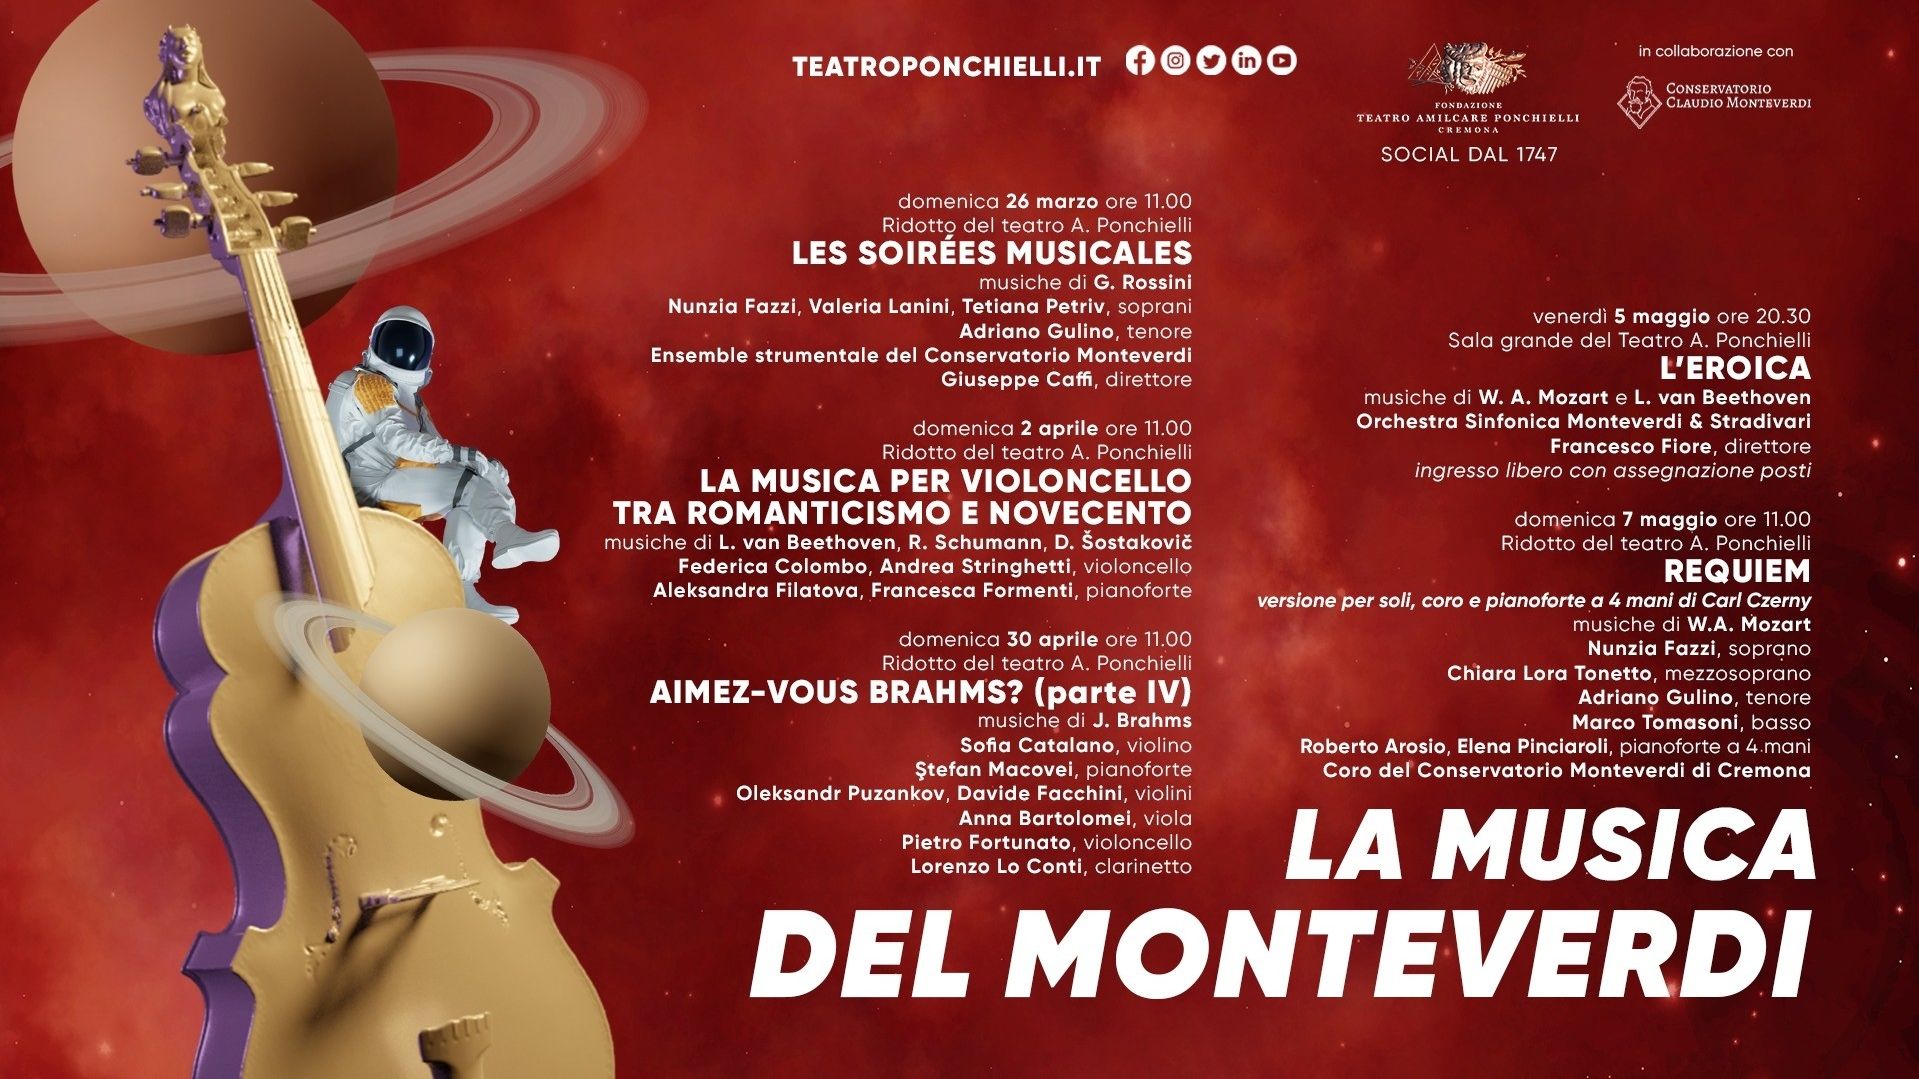 La Musica del Monteverdi: Les Soirées Musicales